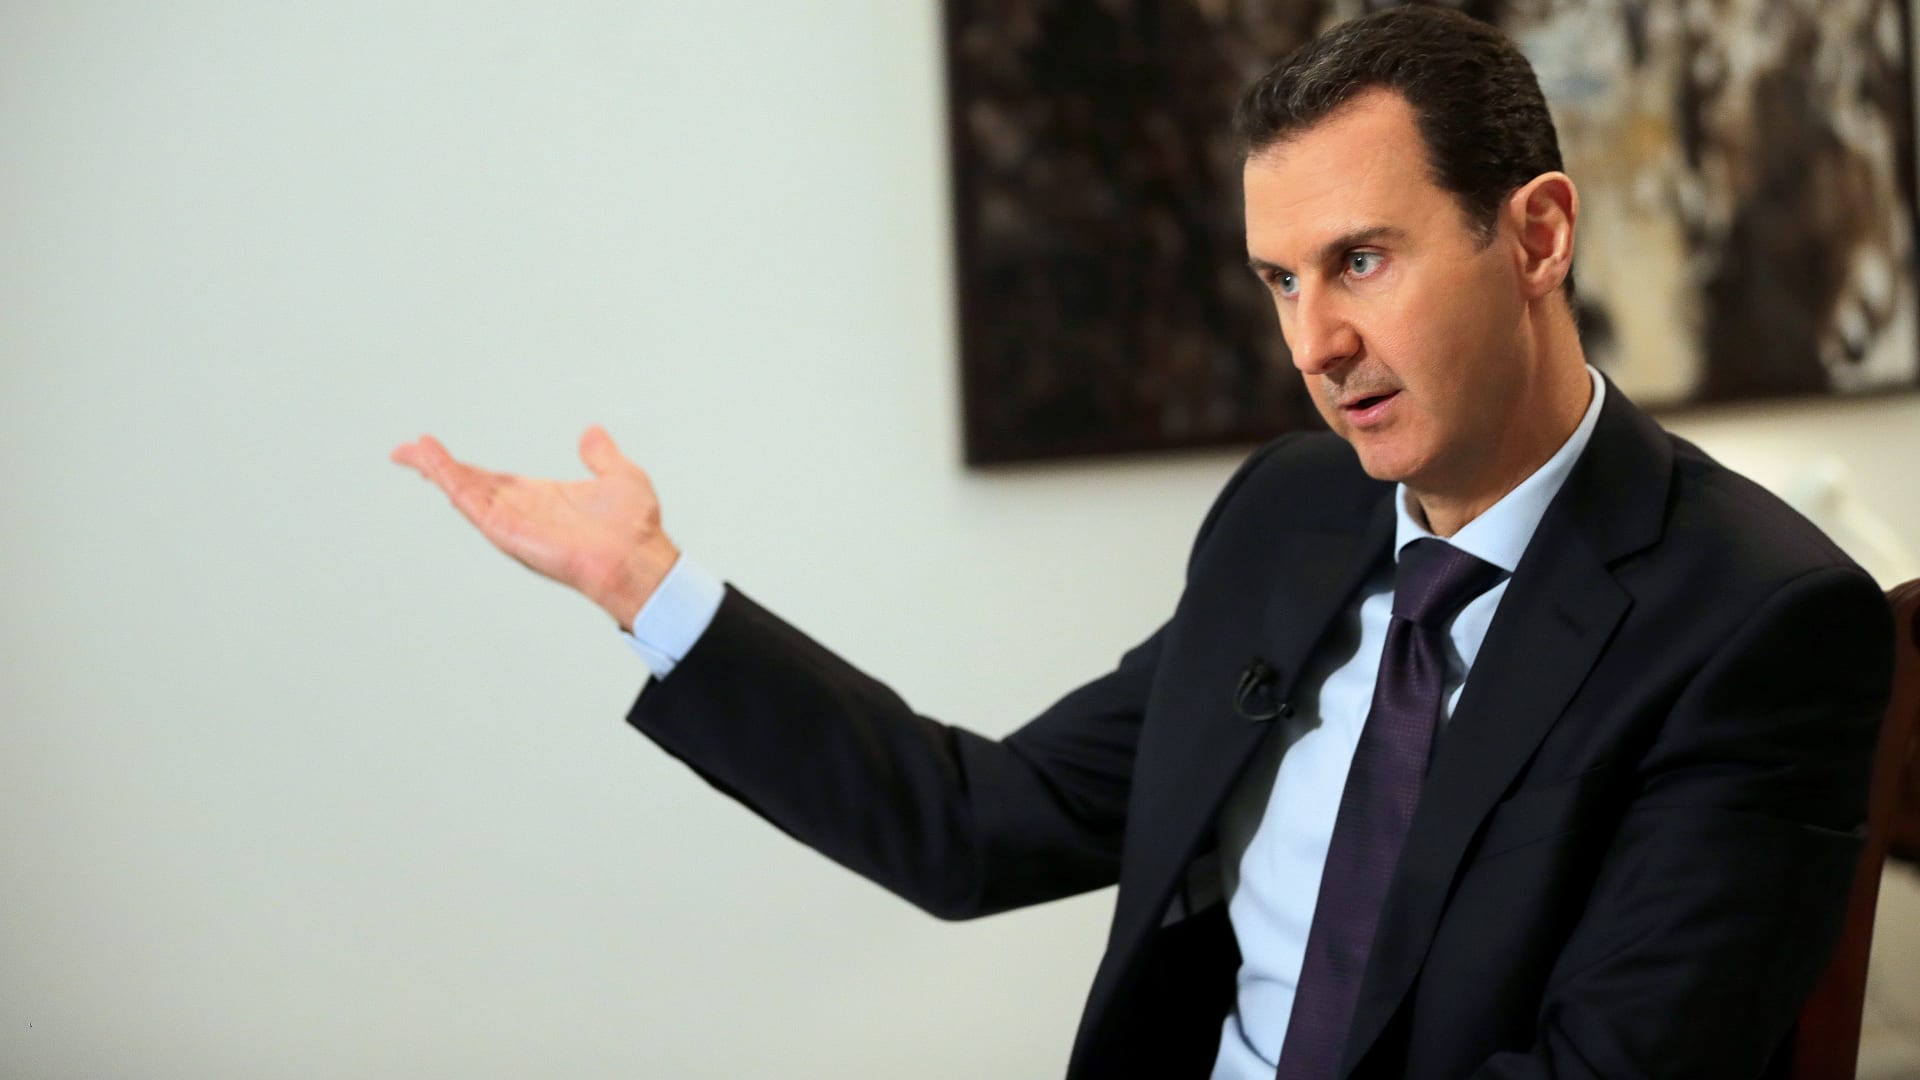 الأسد: معركة سعر الصرف الليرة تدار من الخارج.. وسنتعامل بحزم مع "اللصوصية"